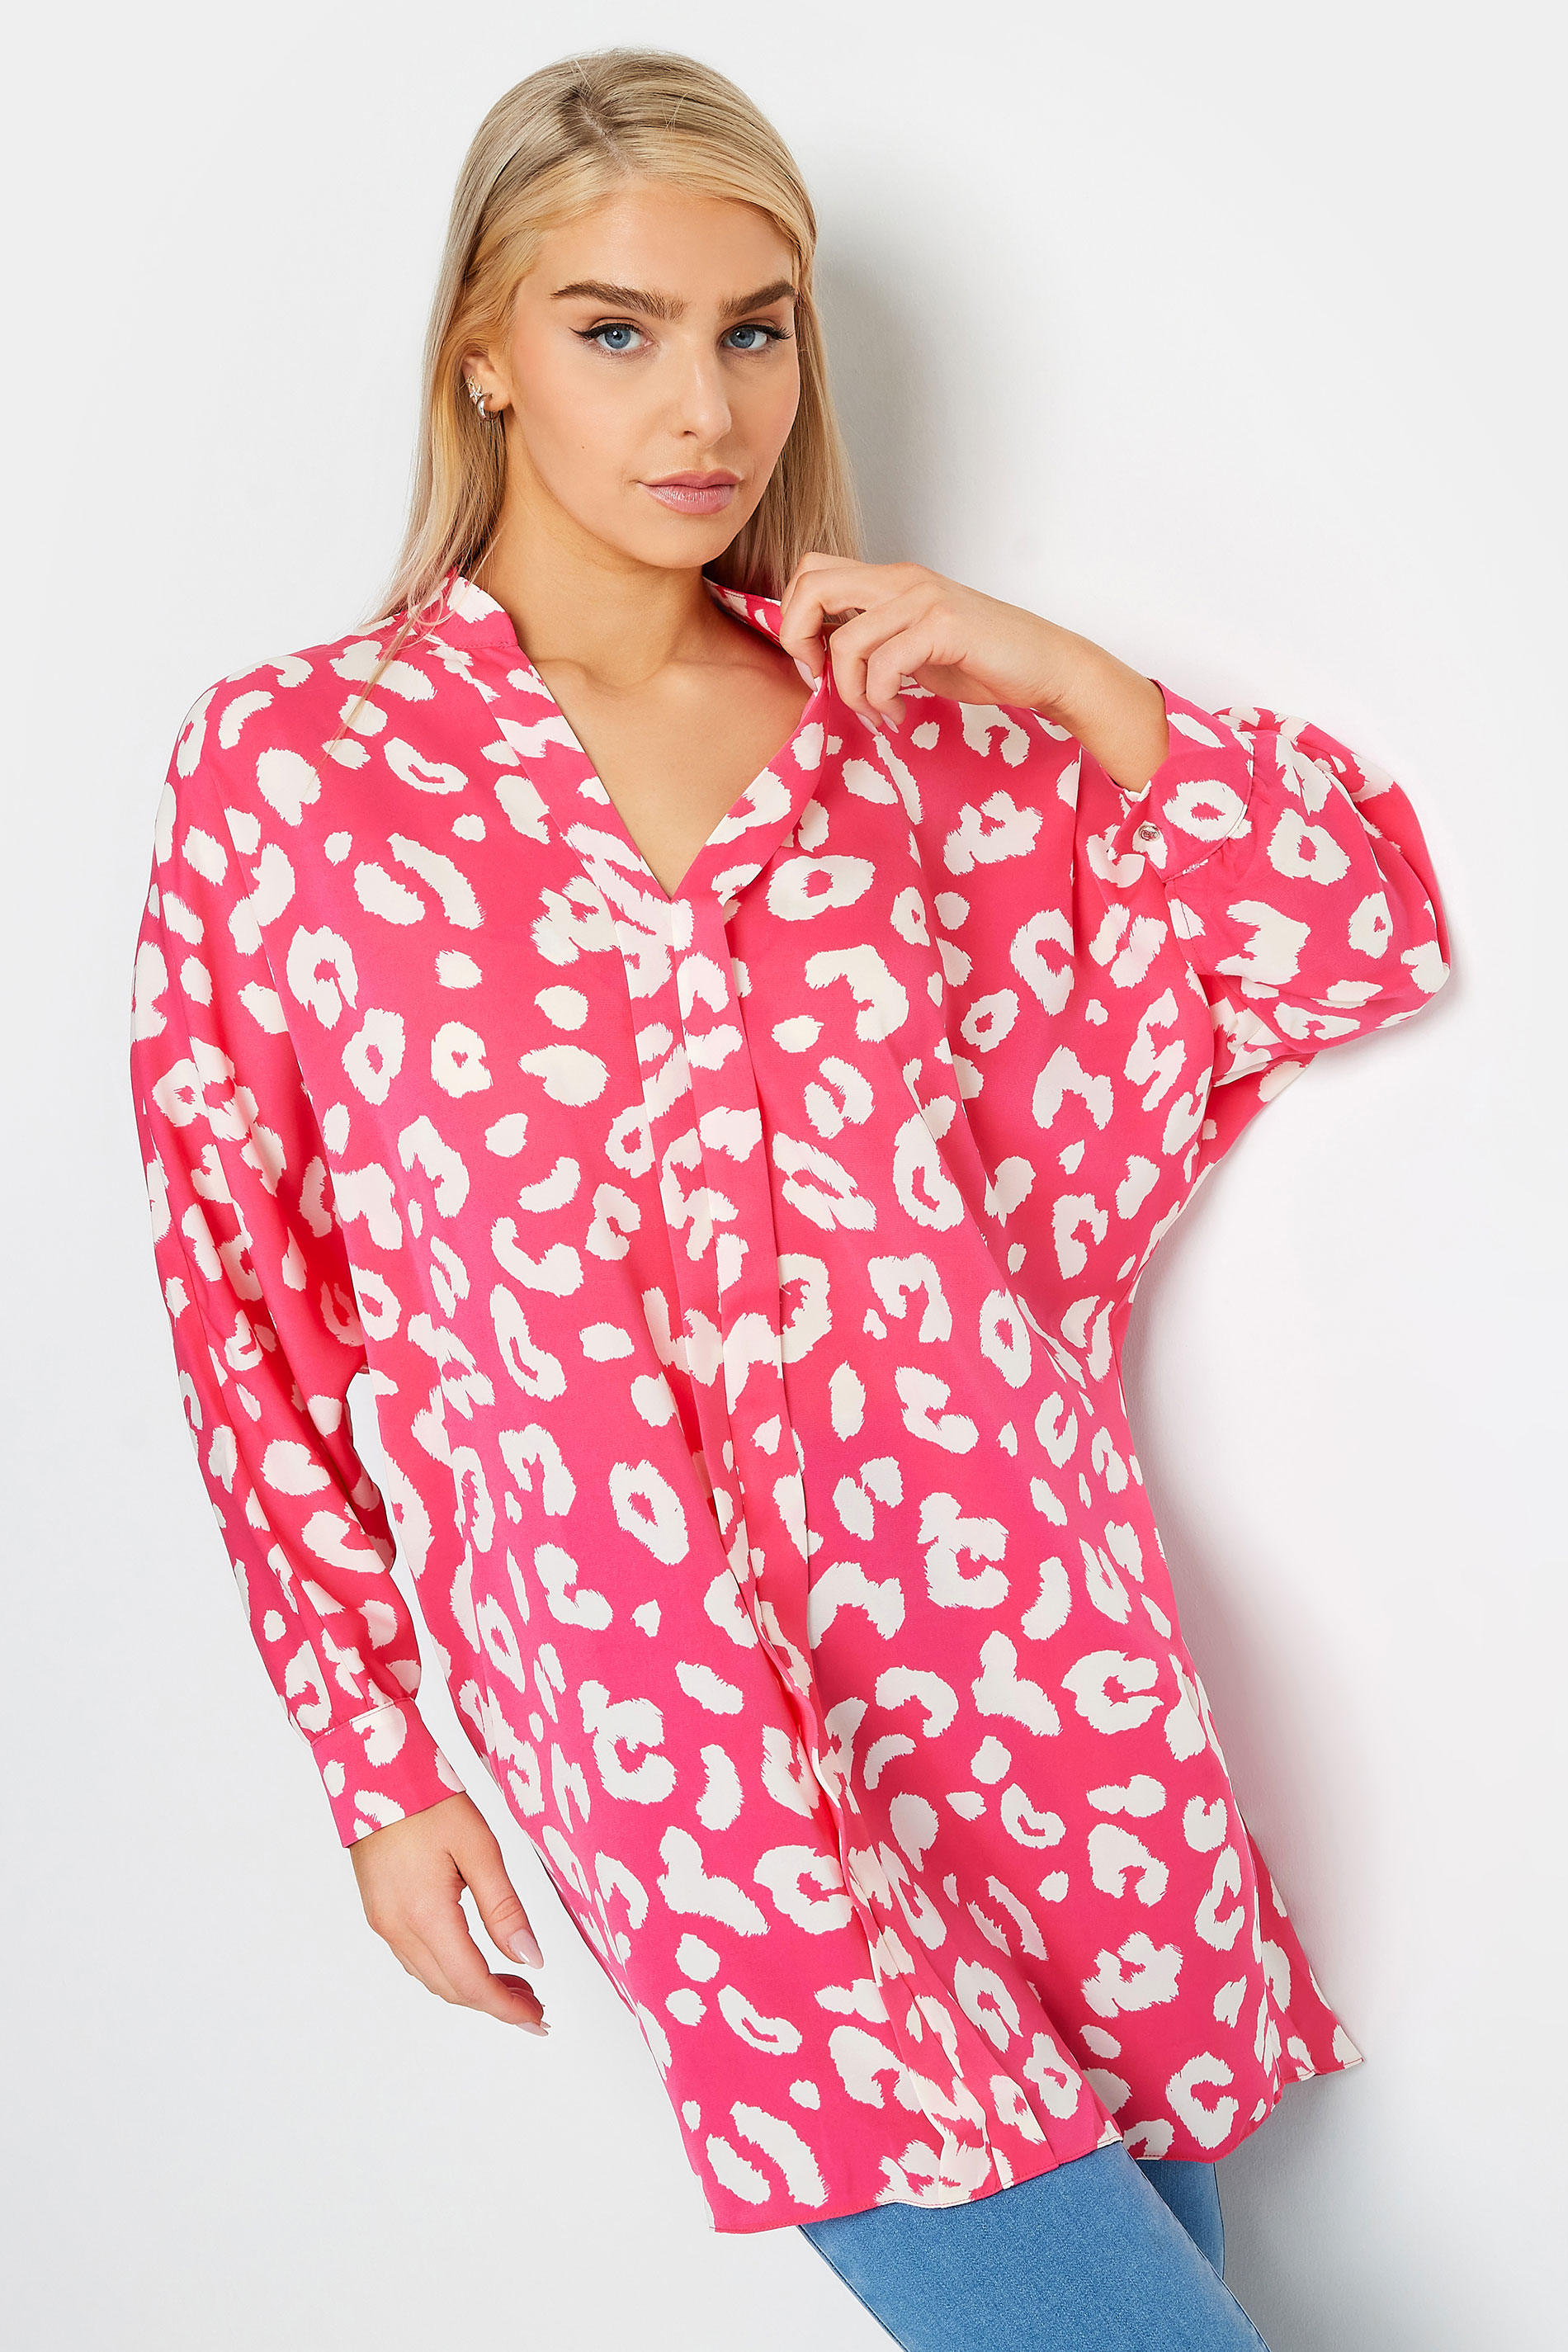 M&Co Pink Leopard Print Blouse | M&Co 1